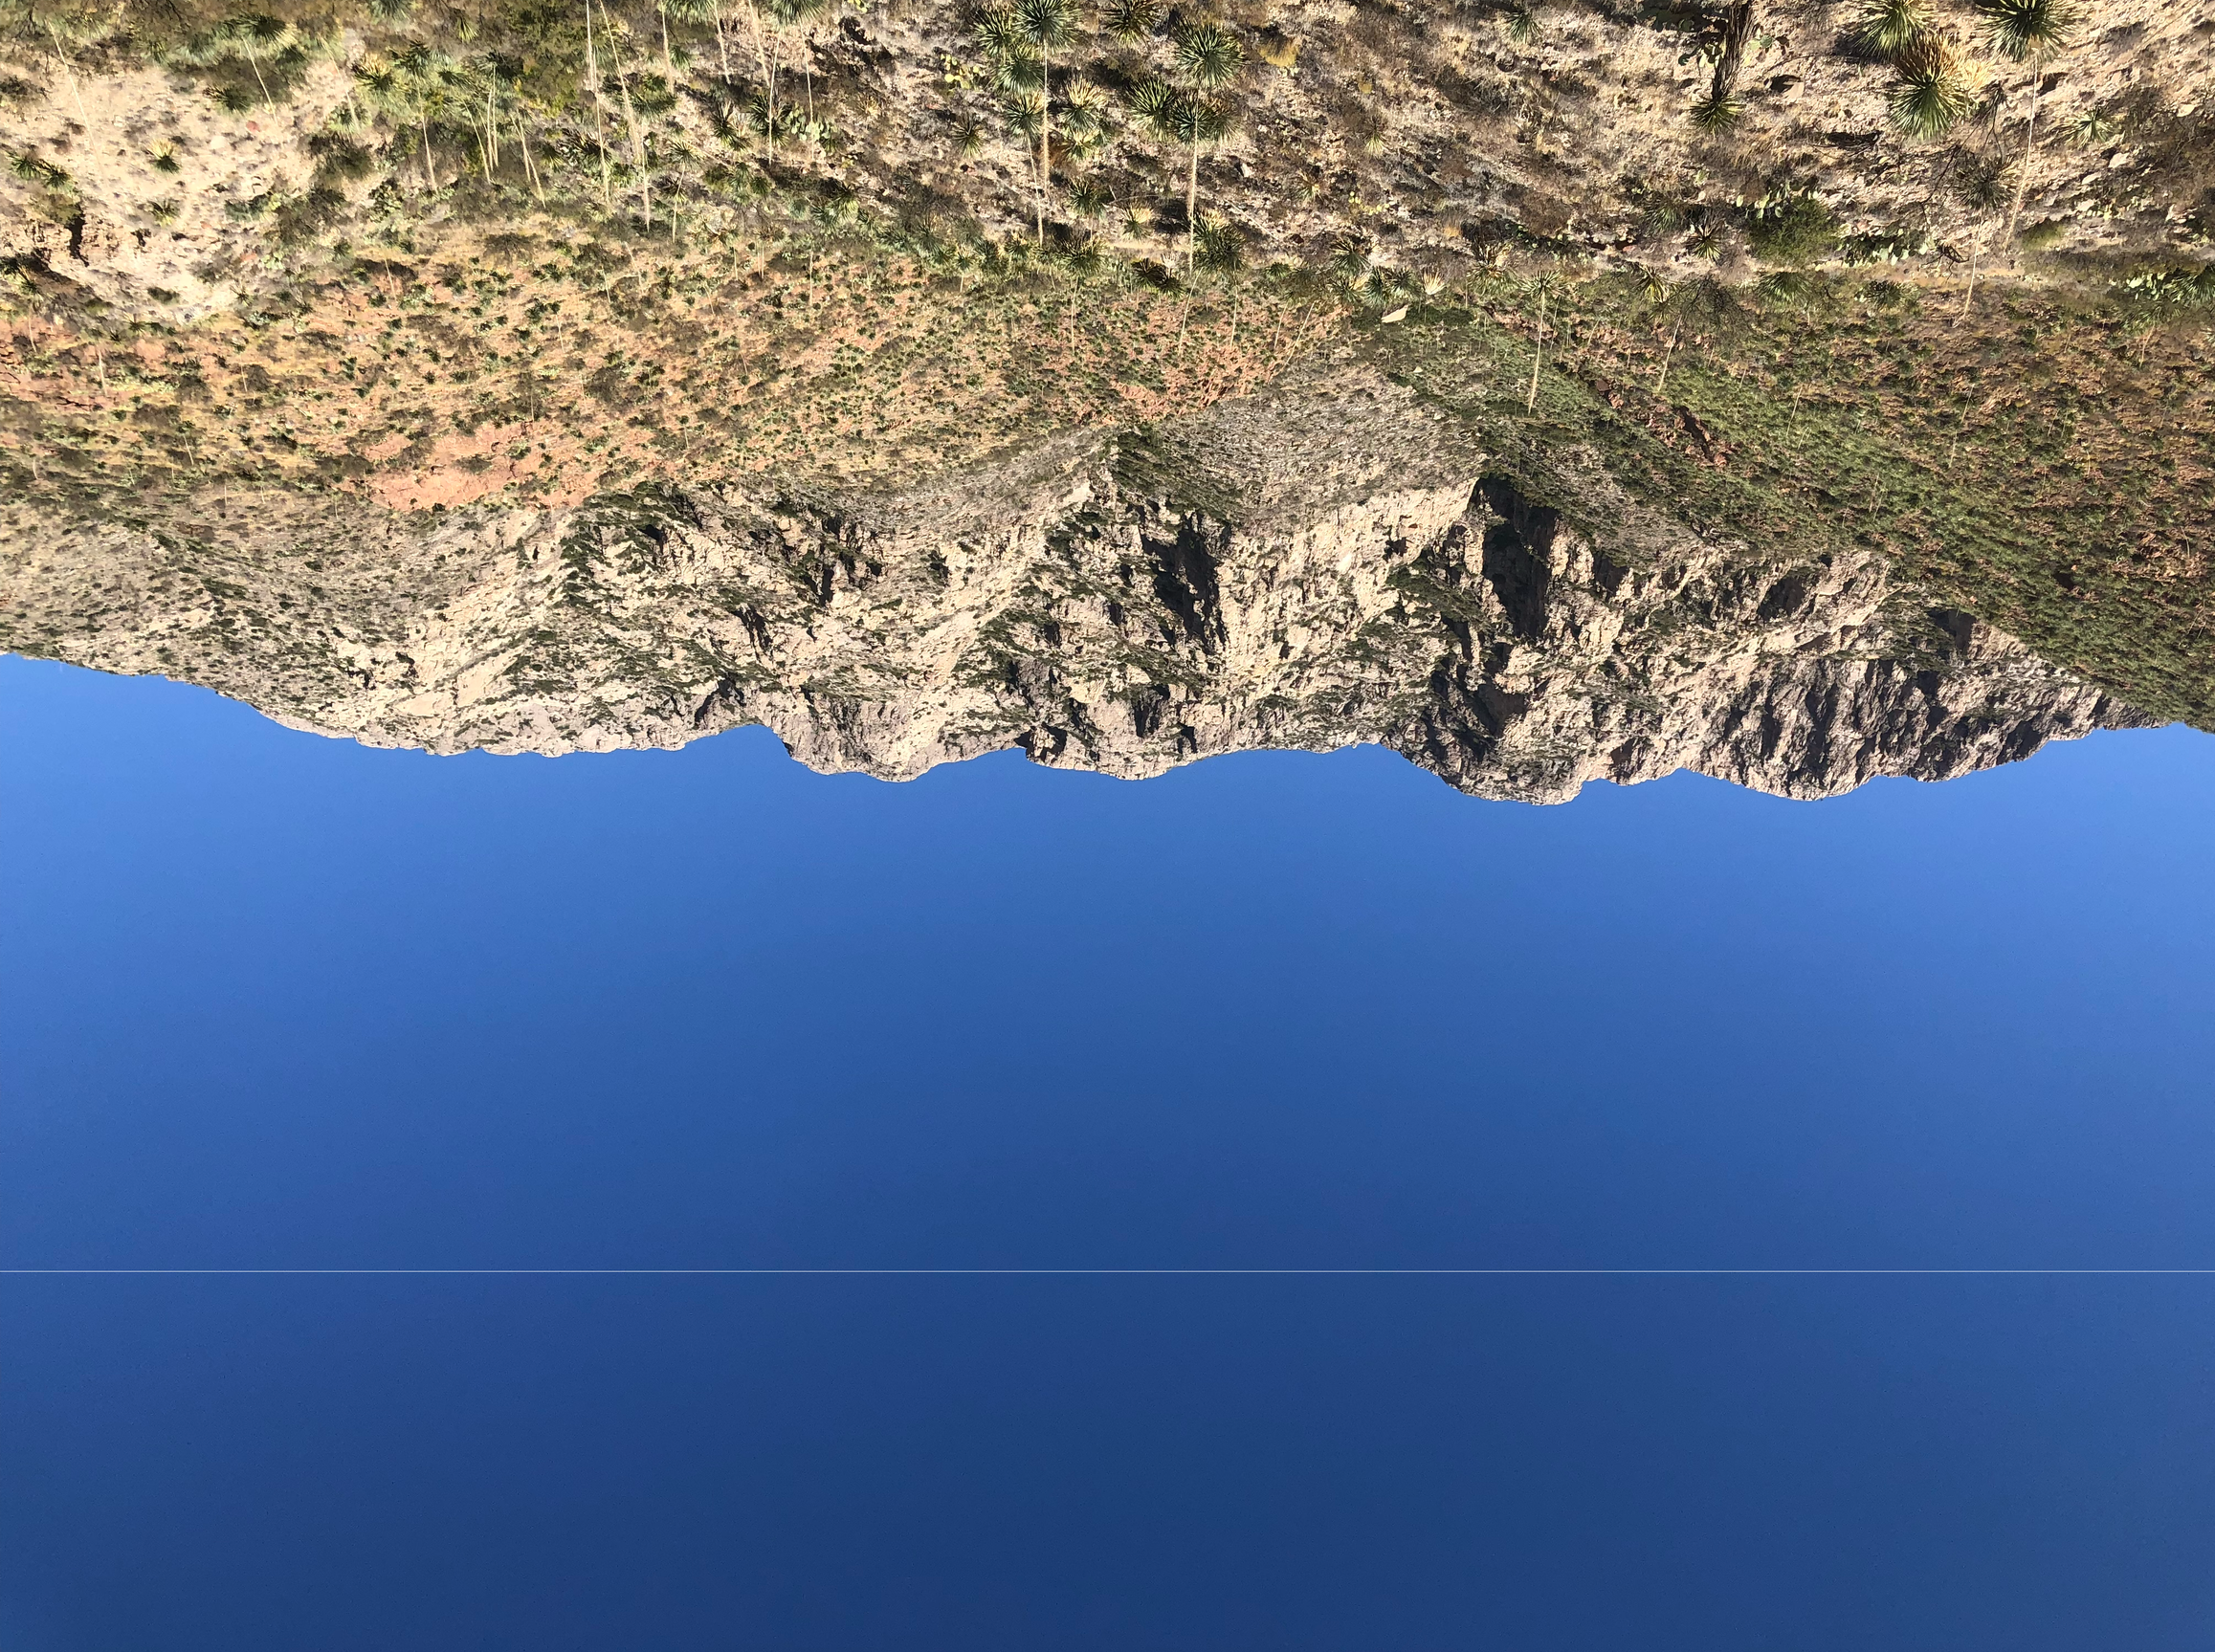 Image of upsidedown mountain range